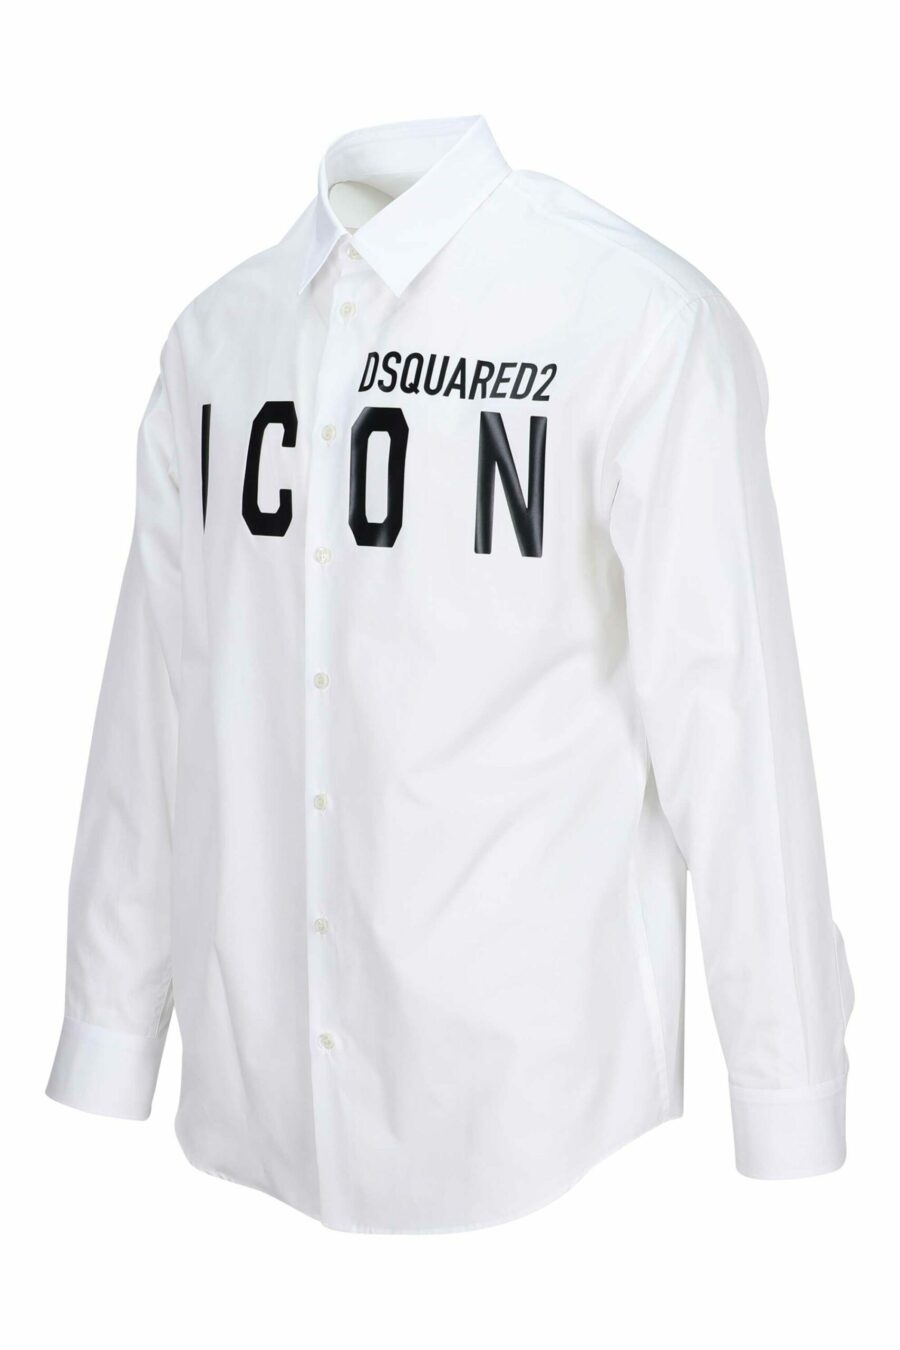 Camisa blanca con maxilogo "icon" - 8052134107577 3 scaled